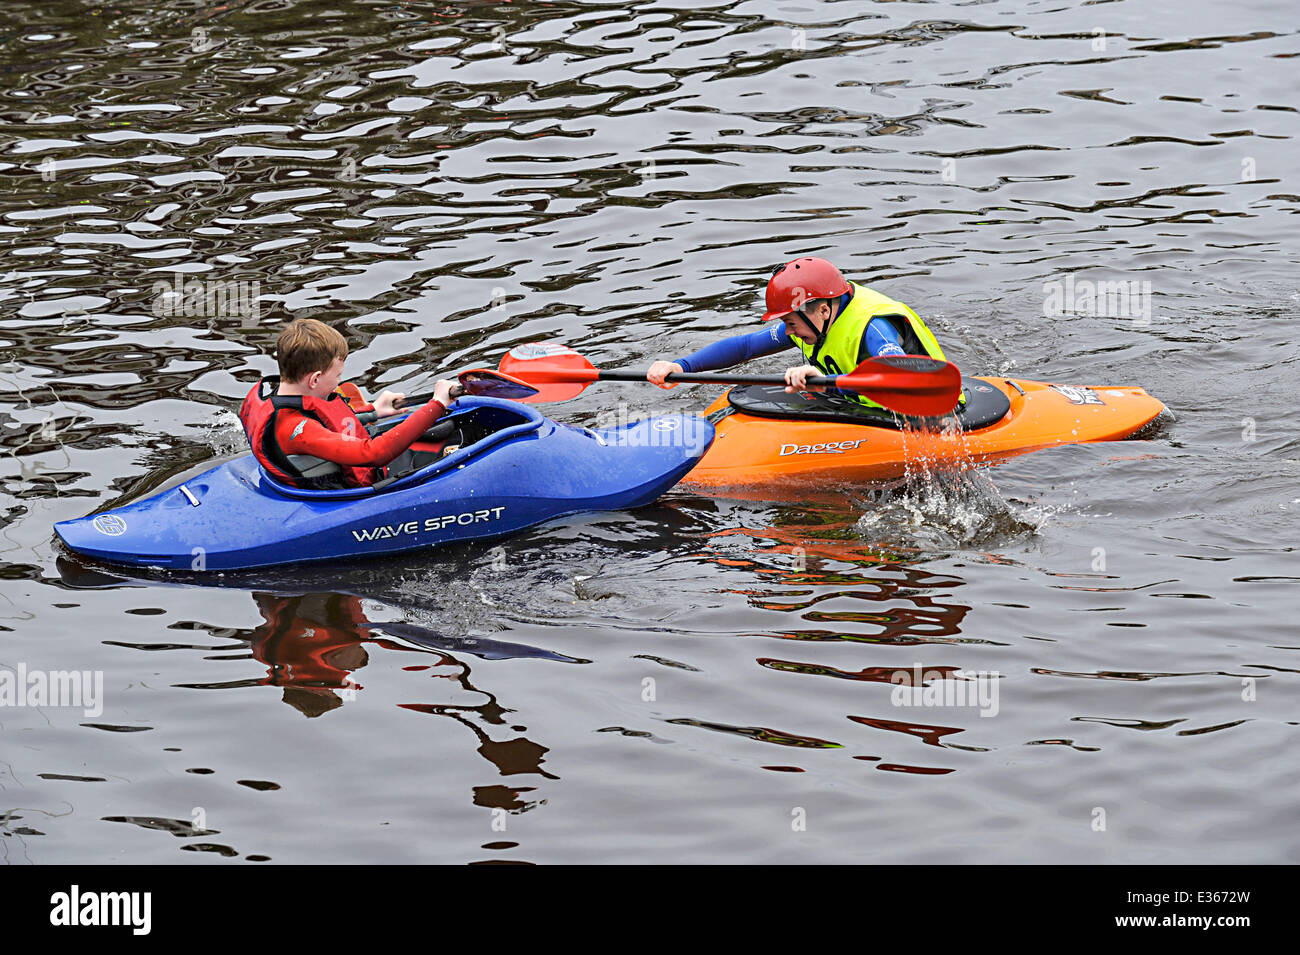 Derry, Londonderry, en Irlande du Nord - 22 juin 2014 - Royaume-Uni Météo. Les jeunes garçons faire du canoë sur un après-midi ensoleillé sur la rivière Foyle. Crédit : George Sweeney / Alamy Live News Banque D'Images